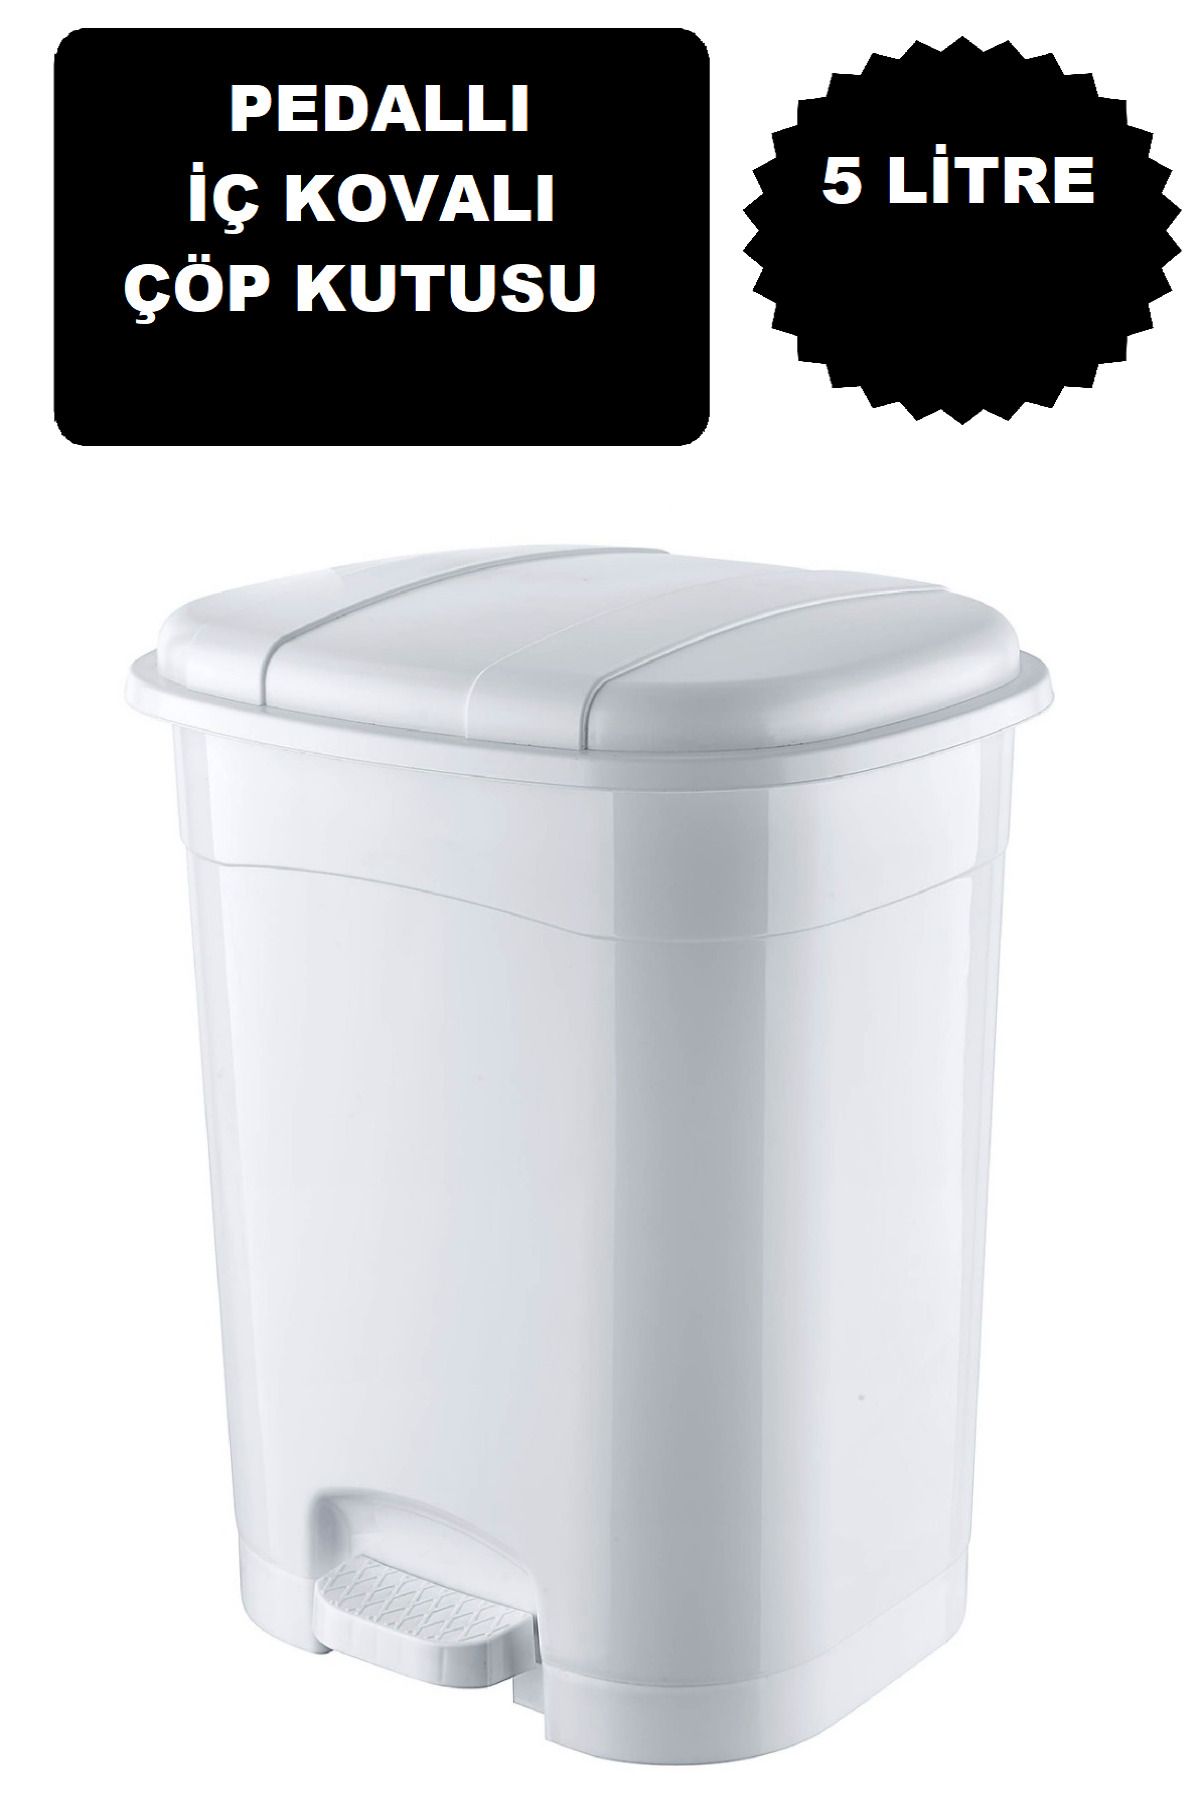 DEEMBRO Beyaz Pedallı Çöp Kovası 5 Litre Iç Kovalı BEYAZ Mutfak Tezgah Üstü, Banyo Ve Ofis Için Çöp Kovası